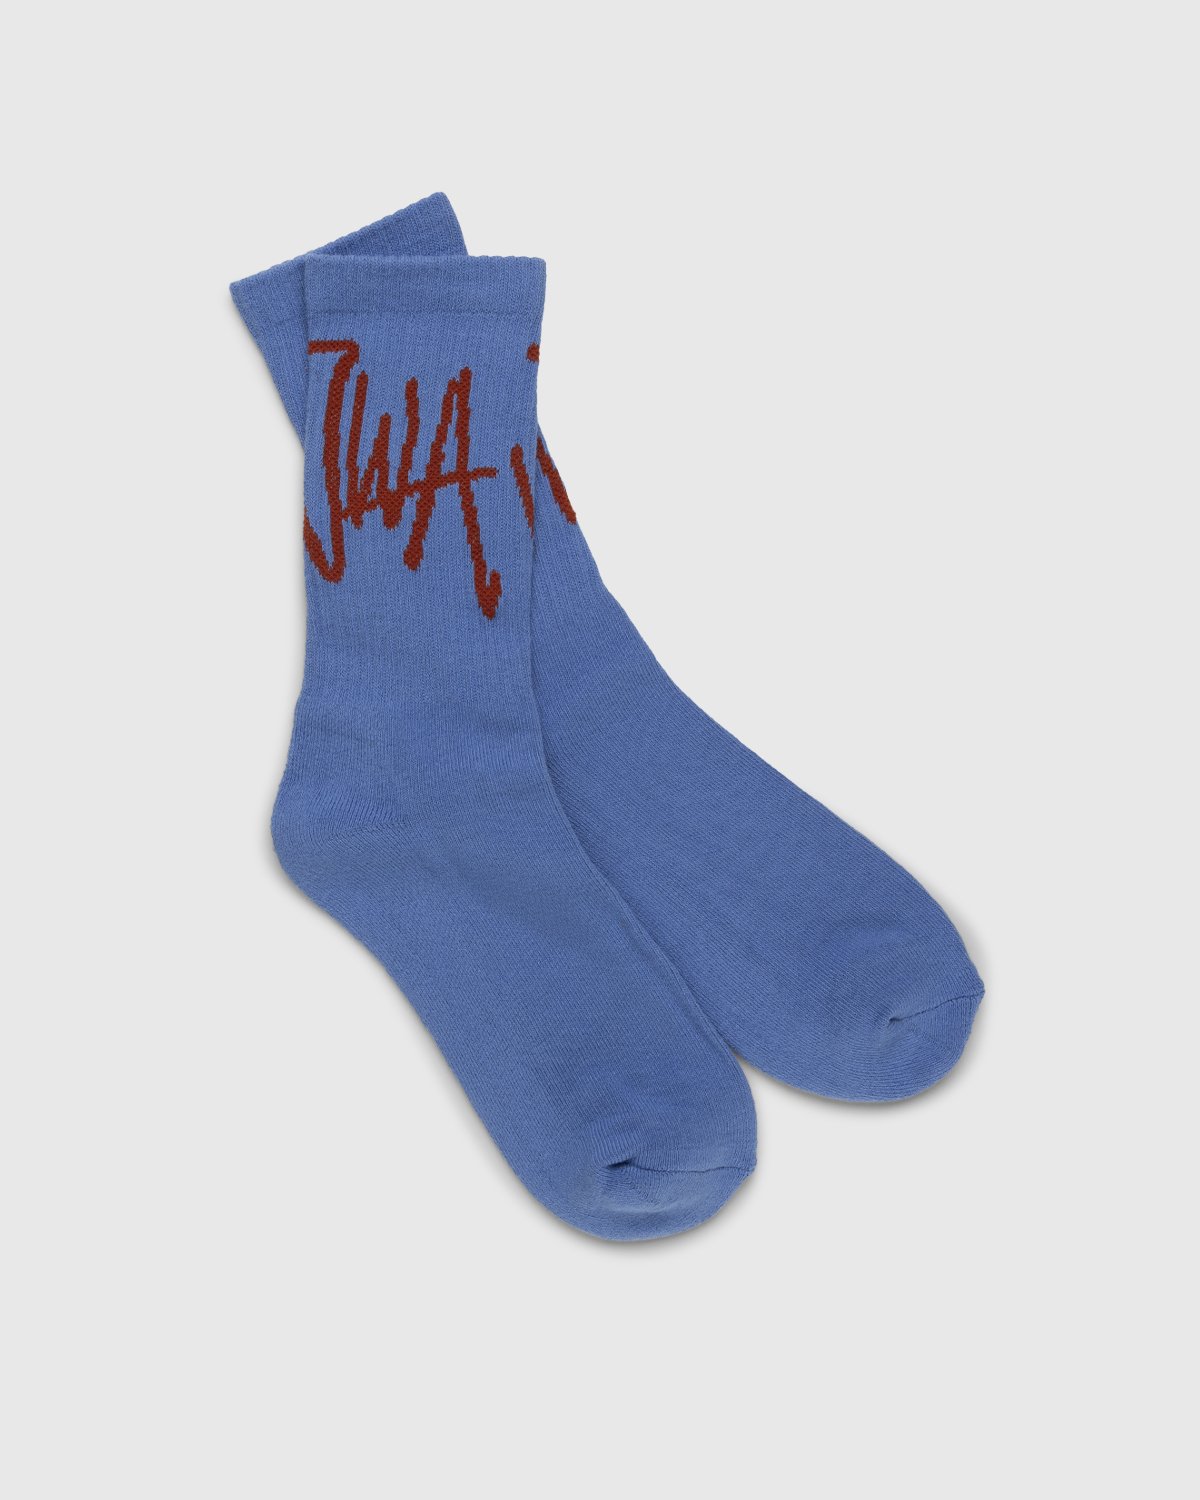 J.W. Anderson - Handwritten JWA Logo Short Ankle Socks Light Blue - Accessories - Blue - Image 1